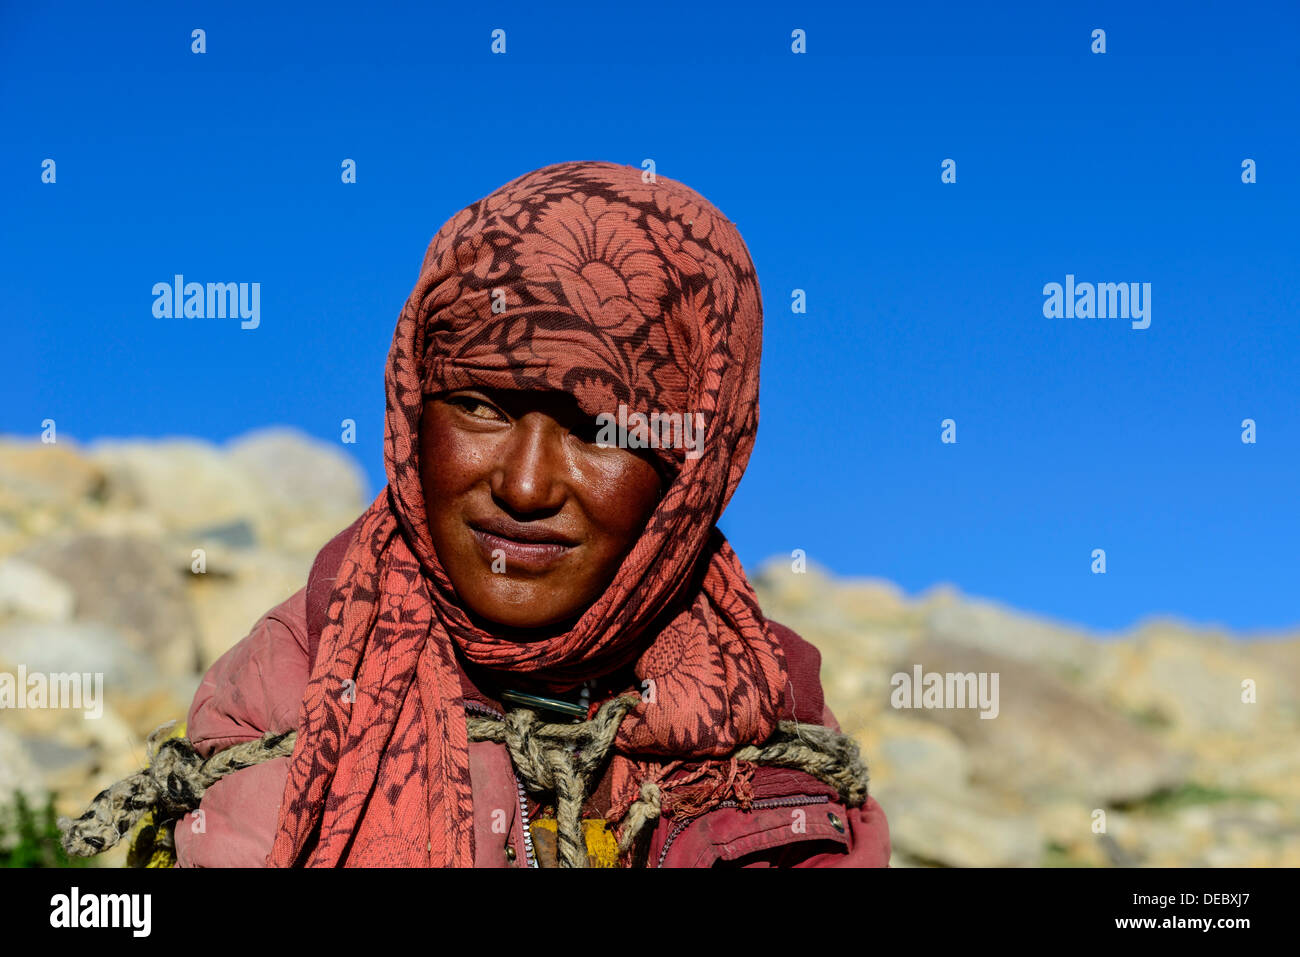 Veiled nomad girl, portrait, Korzok, Ladakh, Jammu and Kashmir, India Stock Photo